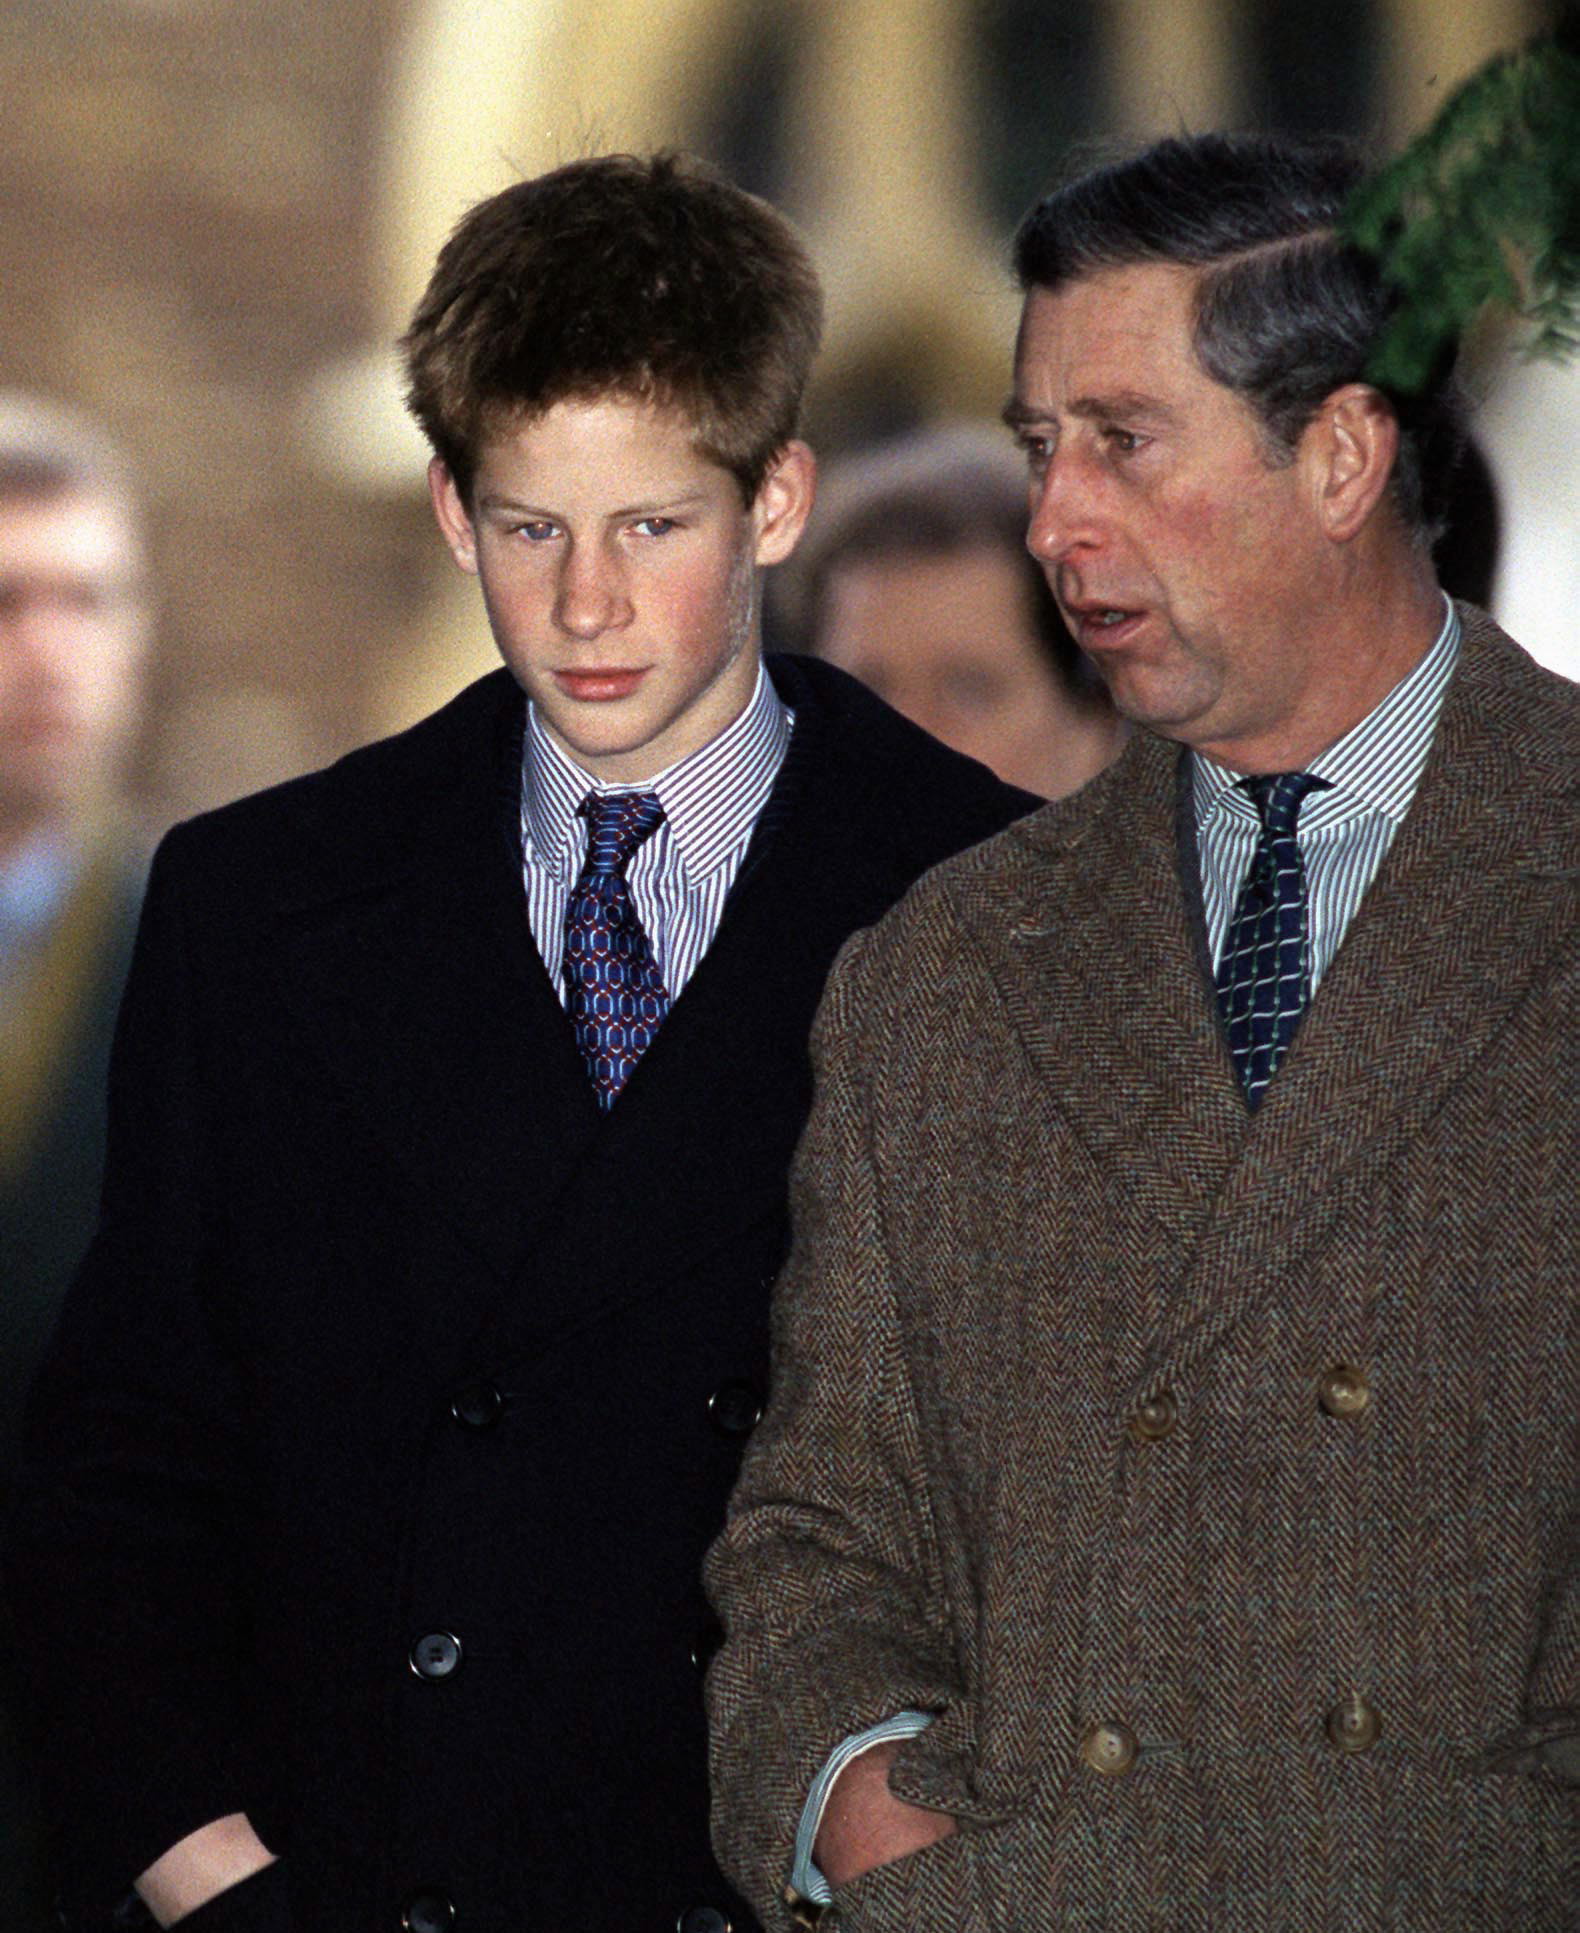 Le prince Charles et le prince Harry assistent à un service religieux de Noël le 25 décembre 1999 | Source : Getty Images